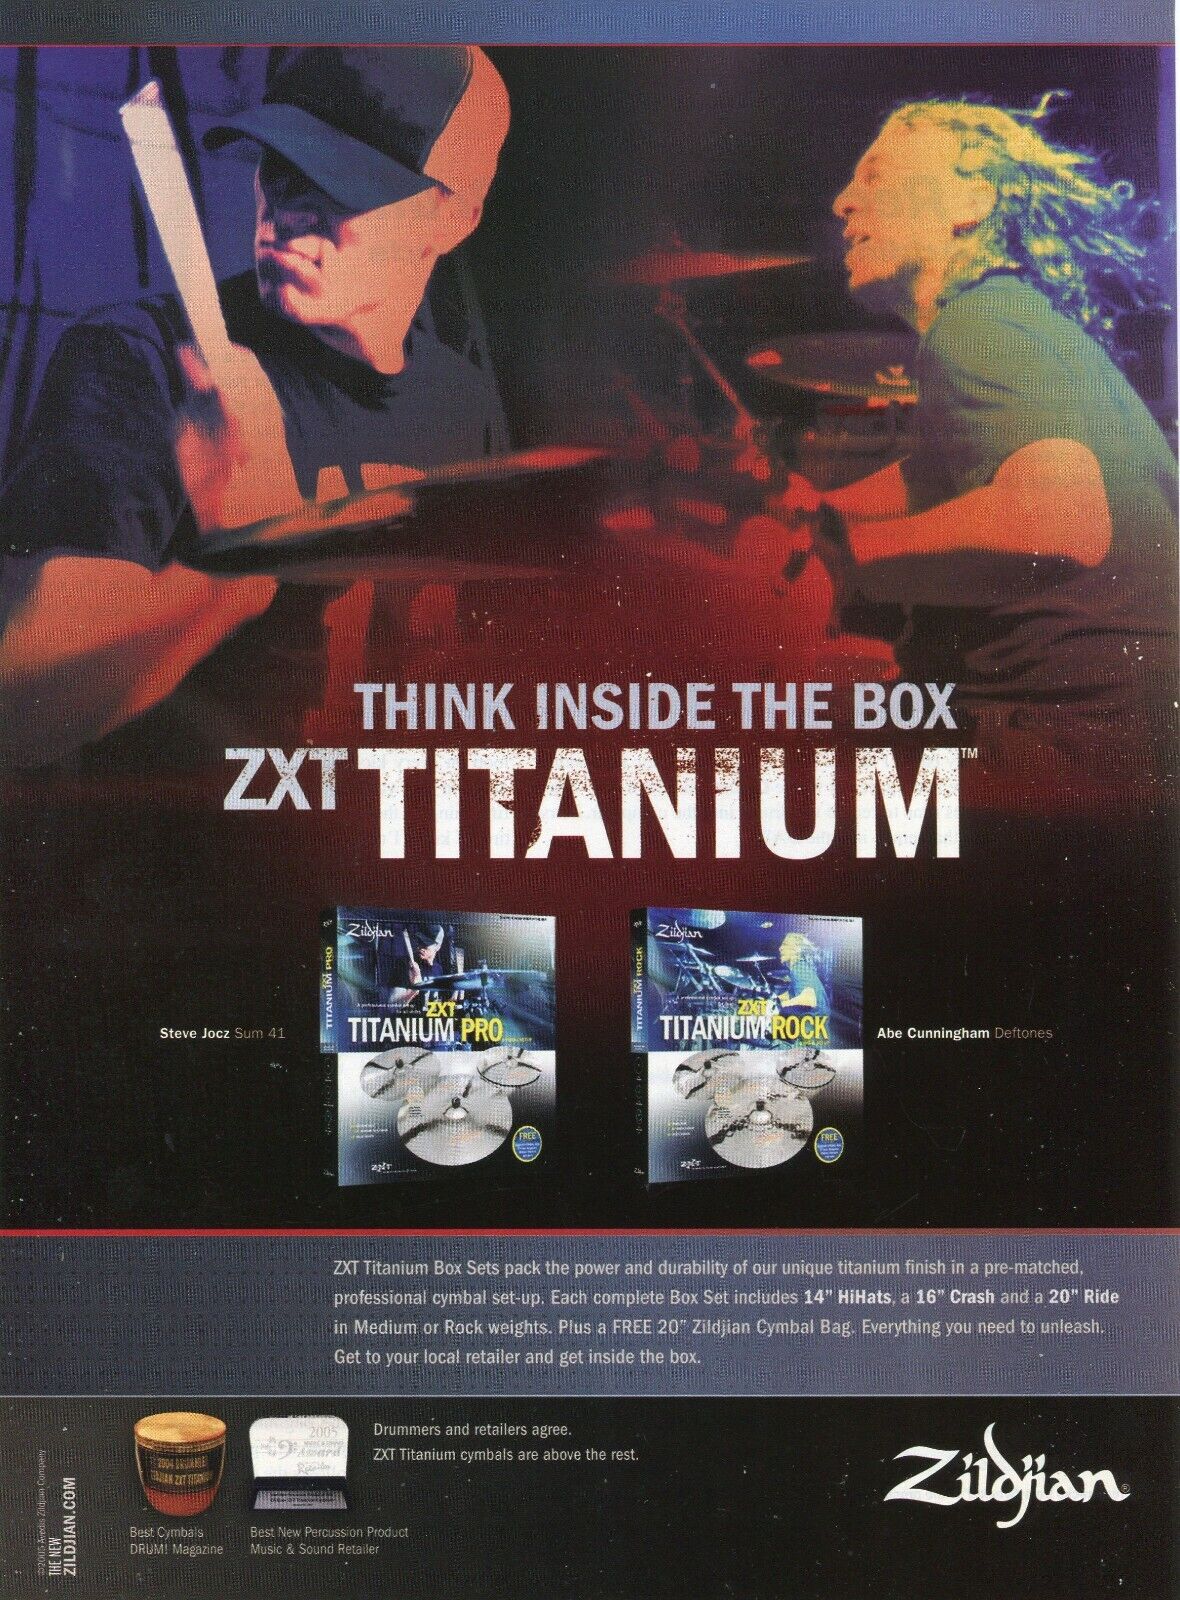 2005 Print Ad of Zildjian ZXT Titanium Drum Cymbals w Steve Jocz, Abe Cunningham